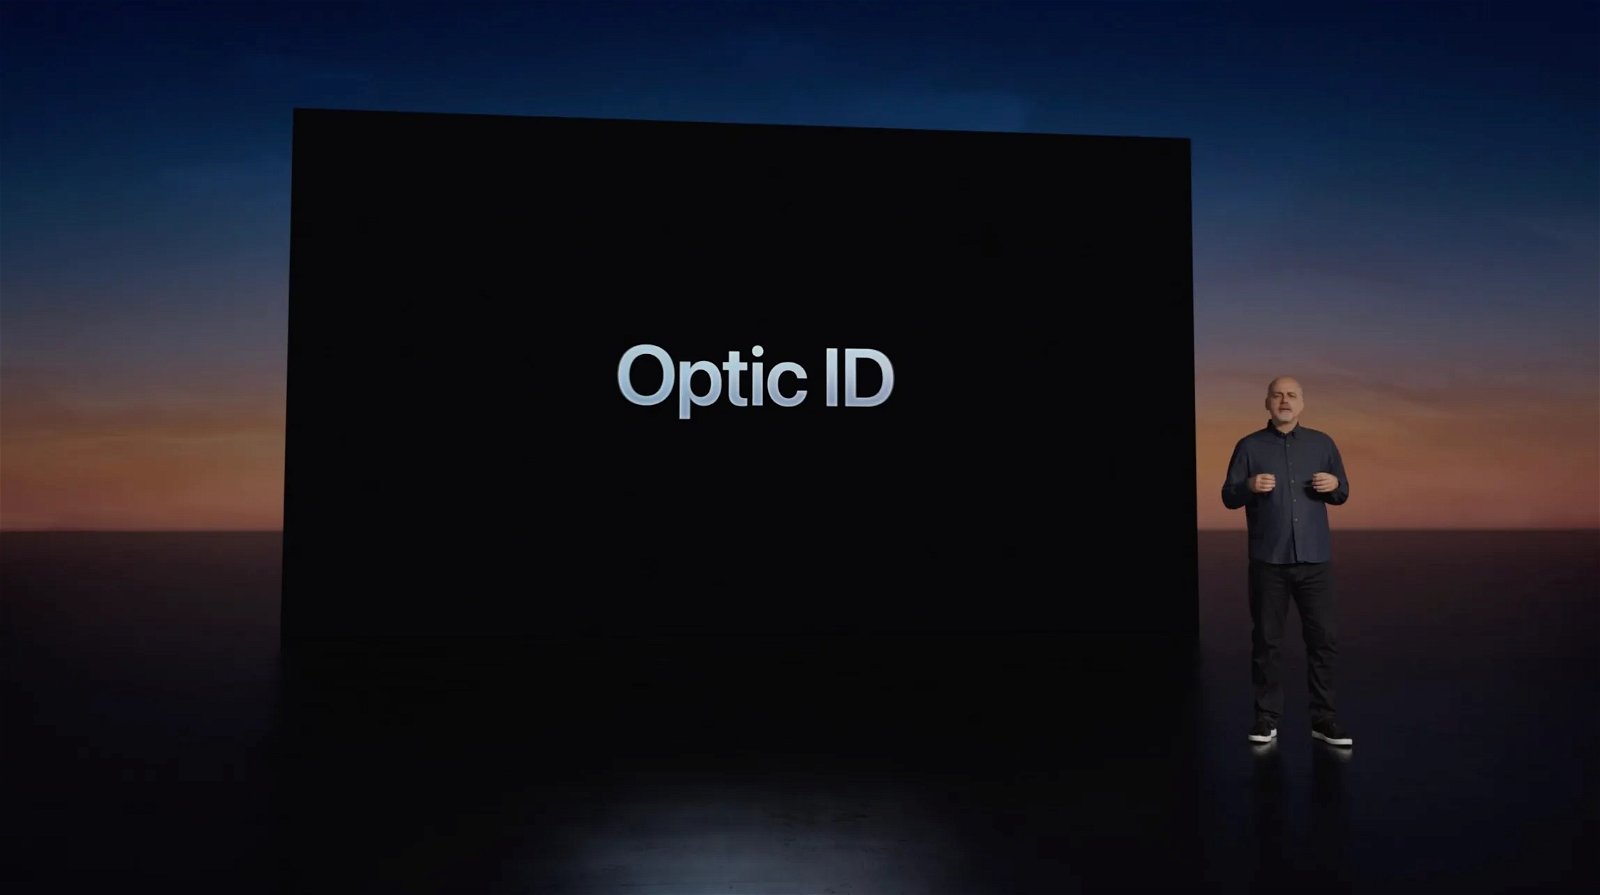 Optic ID